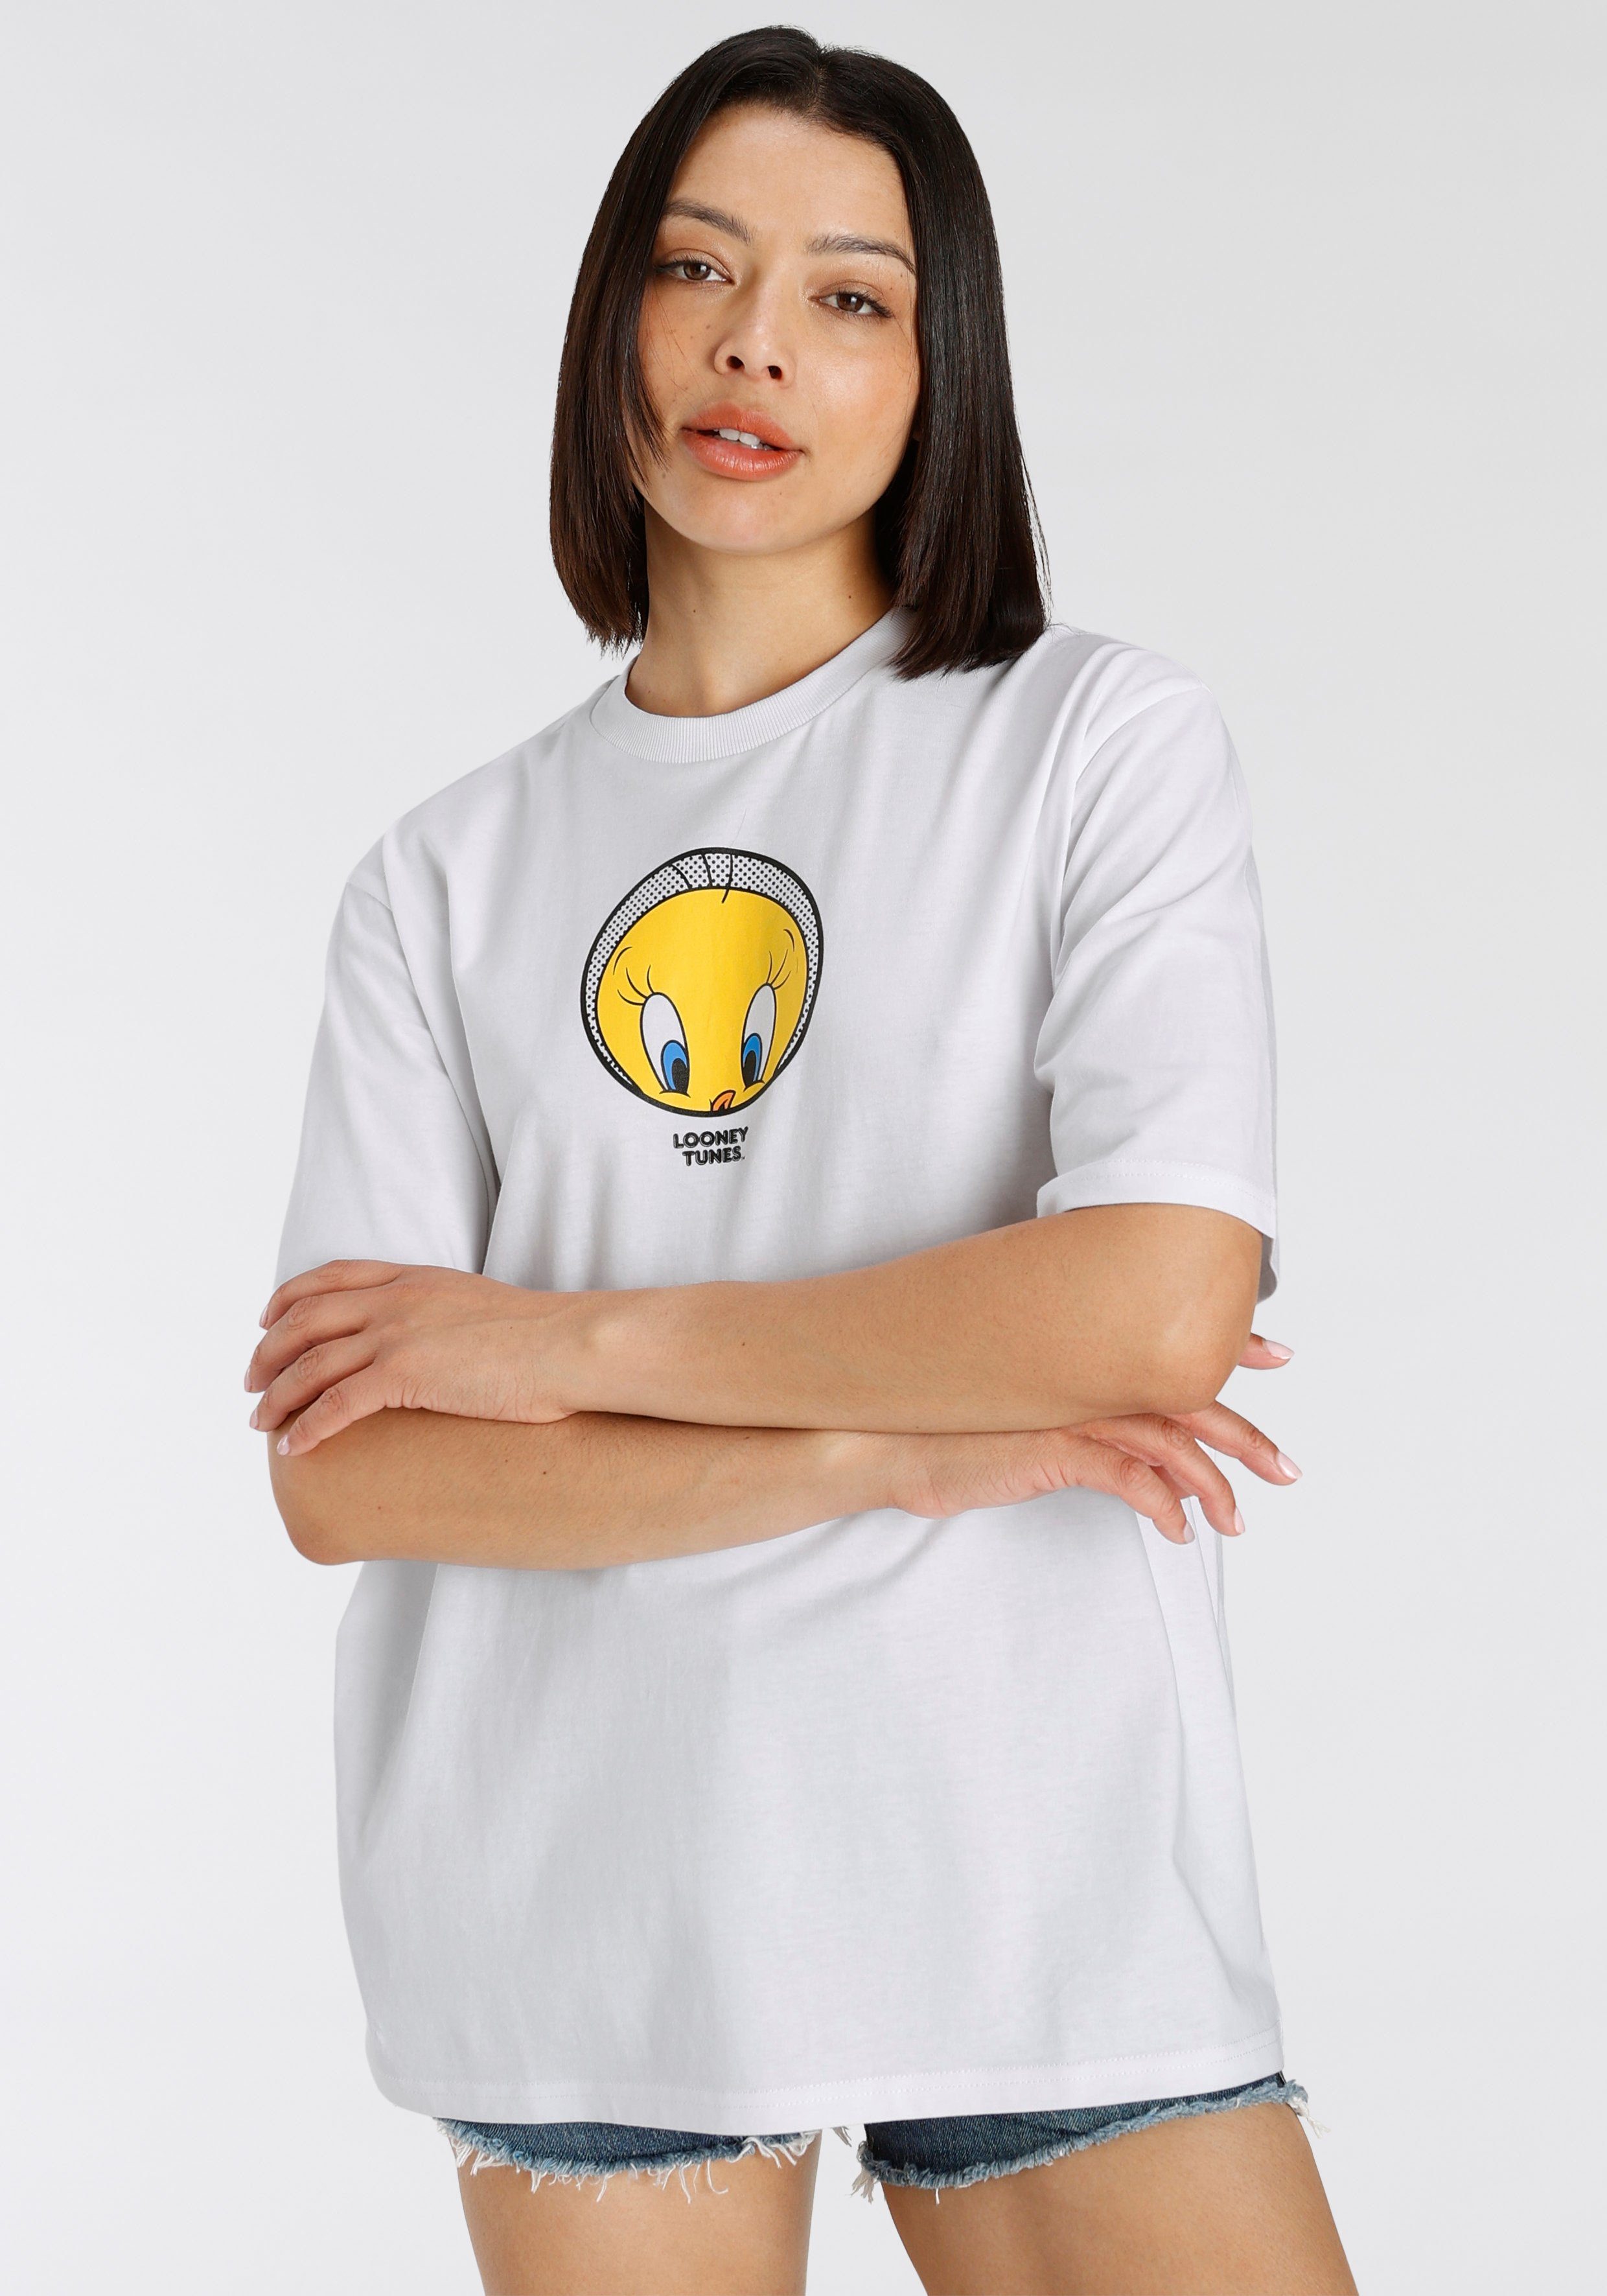 Capelli T-Shirt T-Shirt New white York Tweety